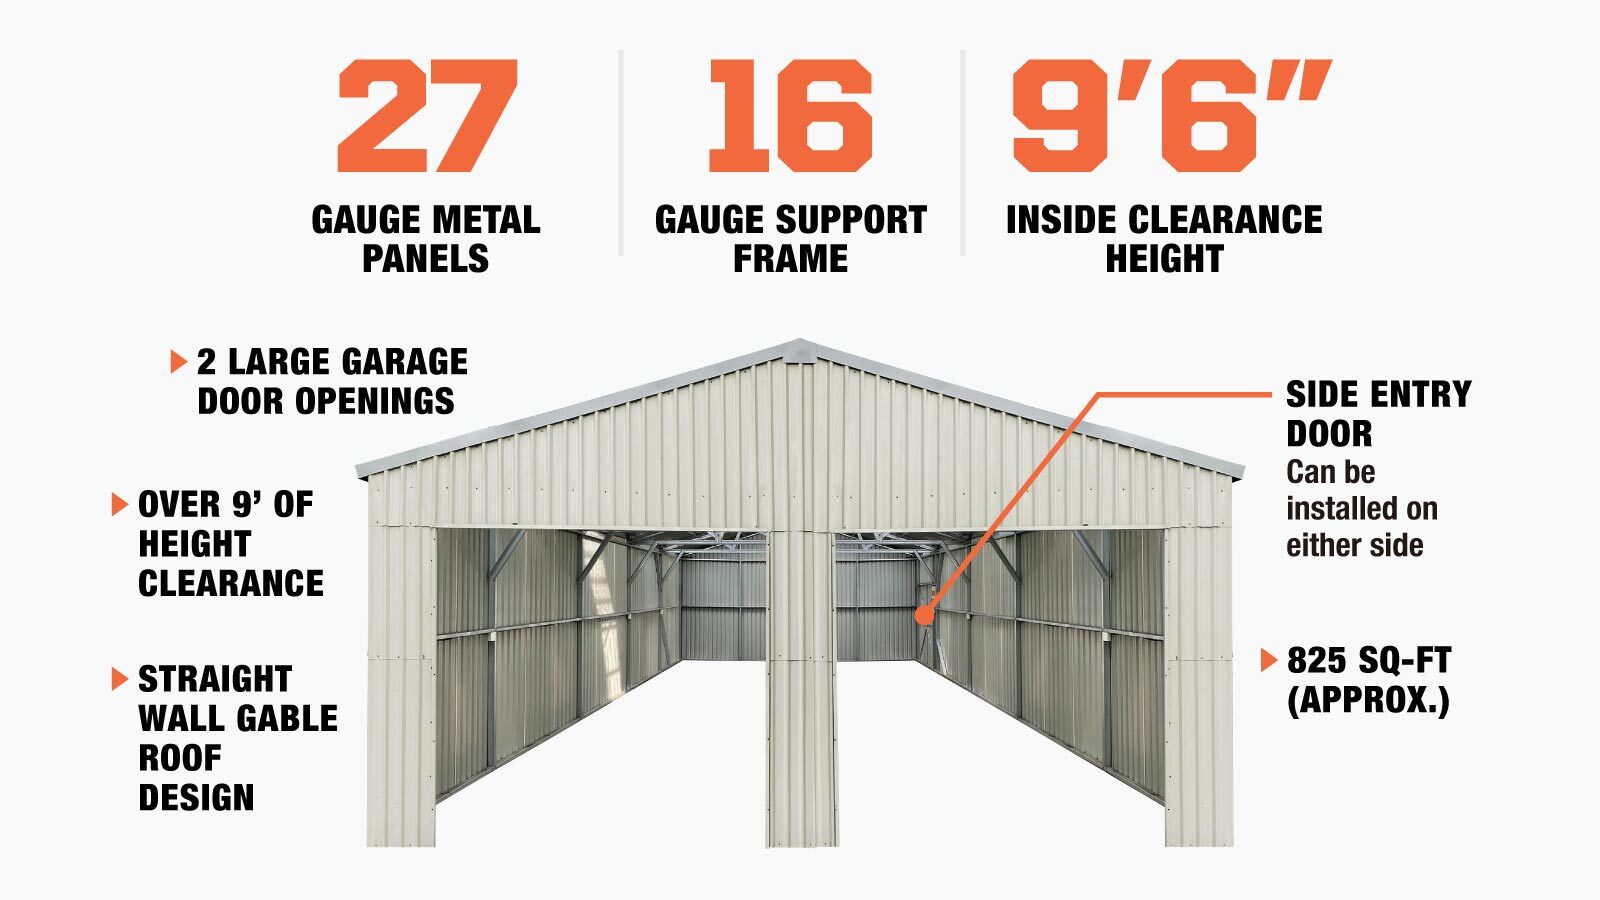 TMG Industrial 25' x 33' hangar métallique à double garage avec porte d'entrée latérale, 825 pi2 de surface de plancher, hauteur d'avant-toit de 9'8